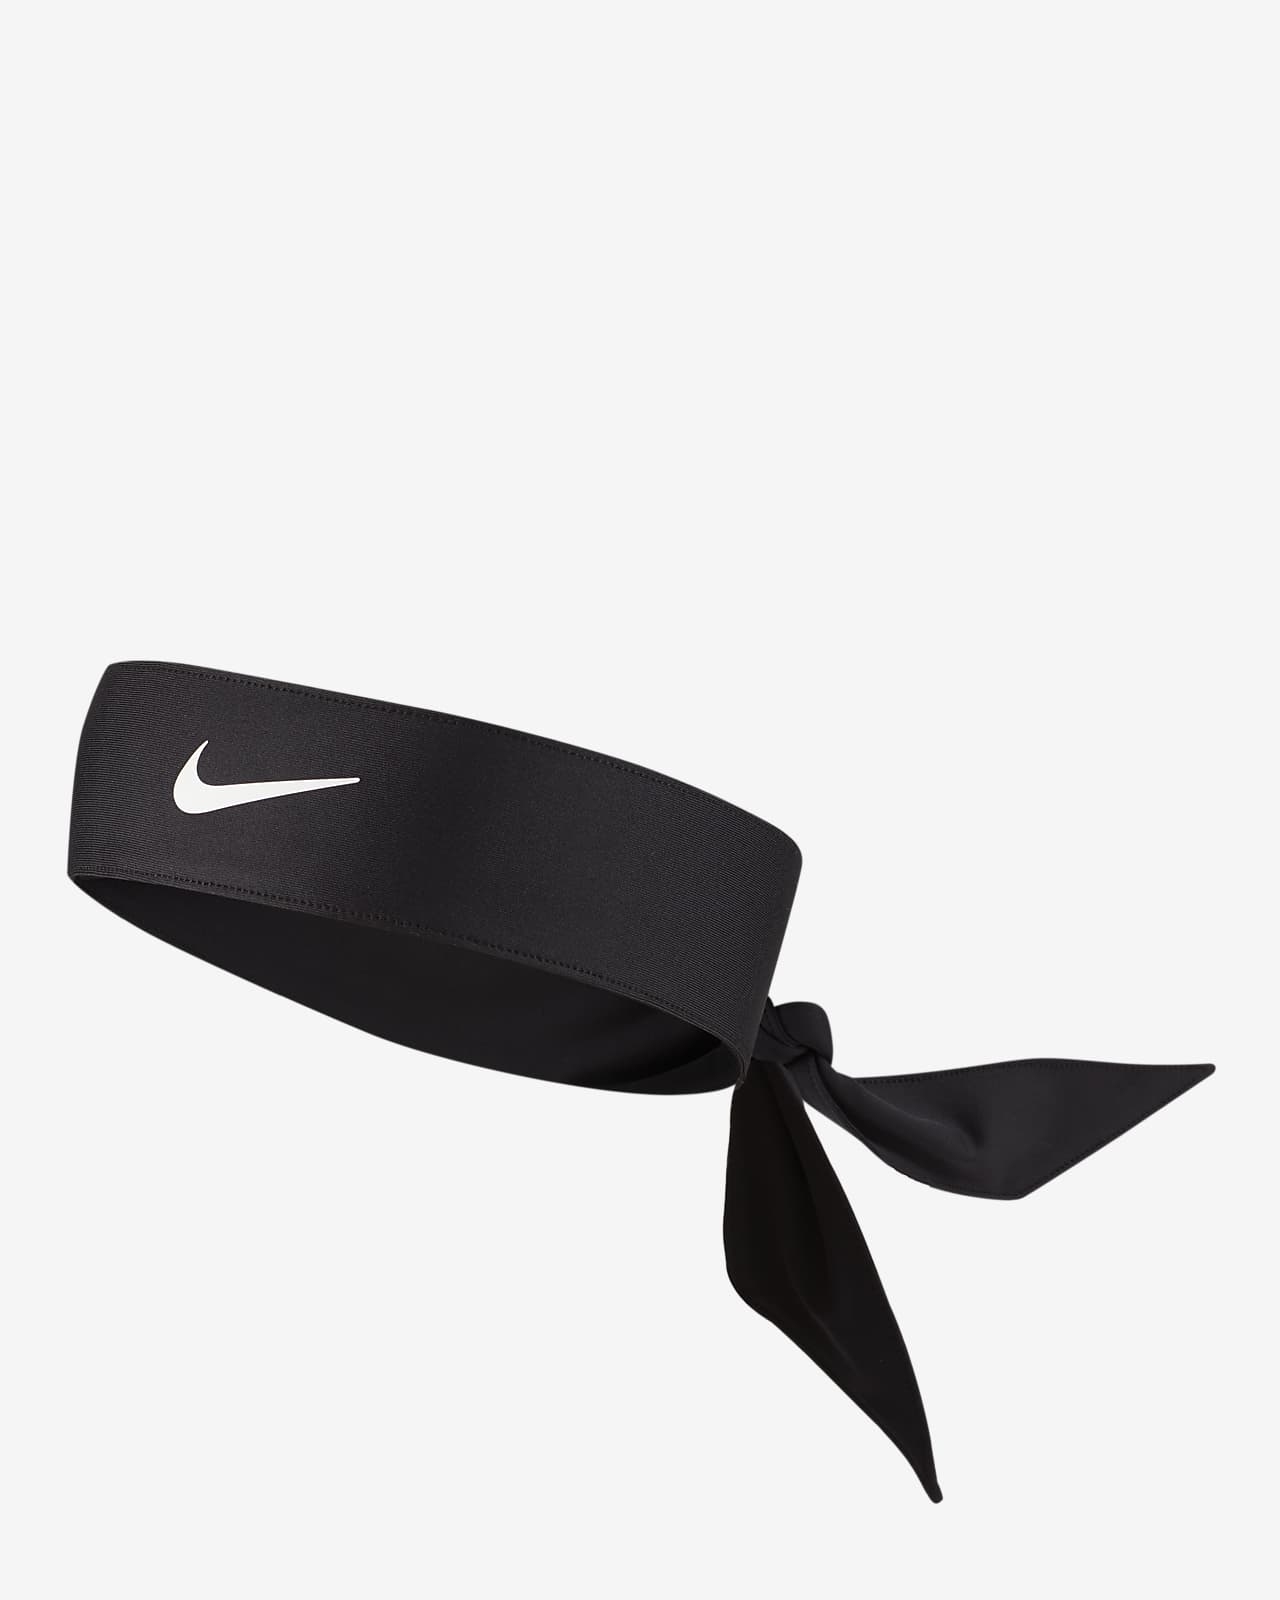 Las mejores cintas para el pelo de Nike de running. Nike ES